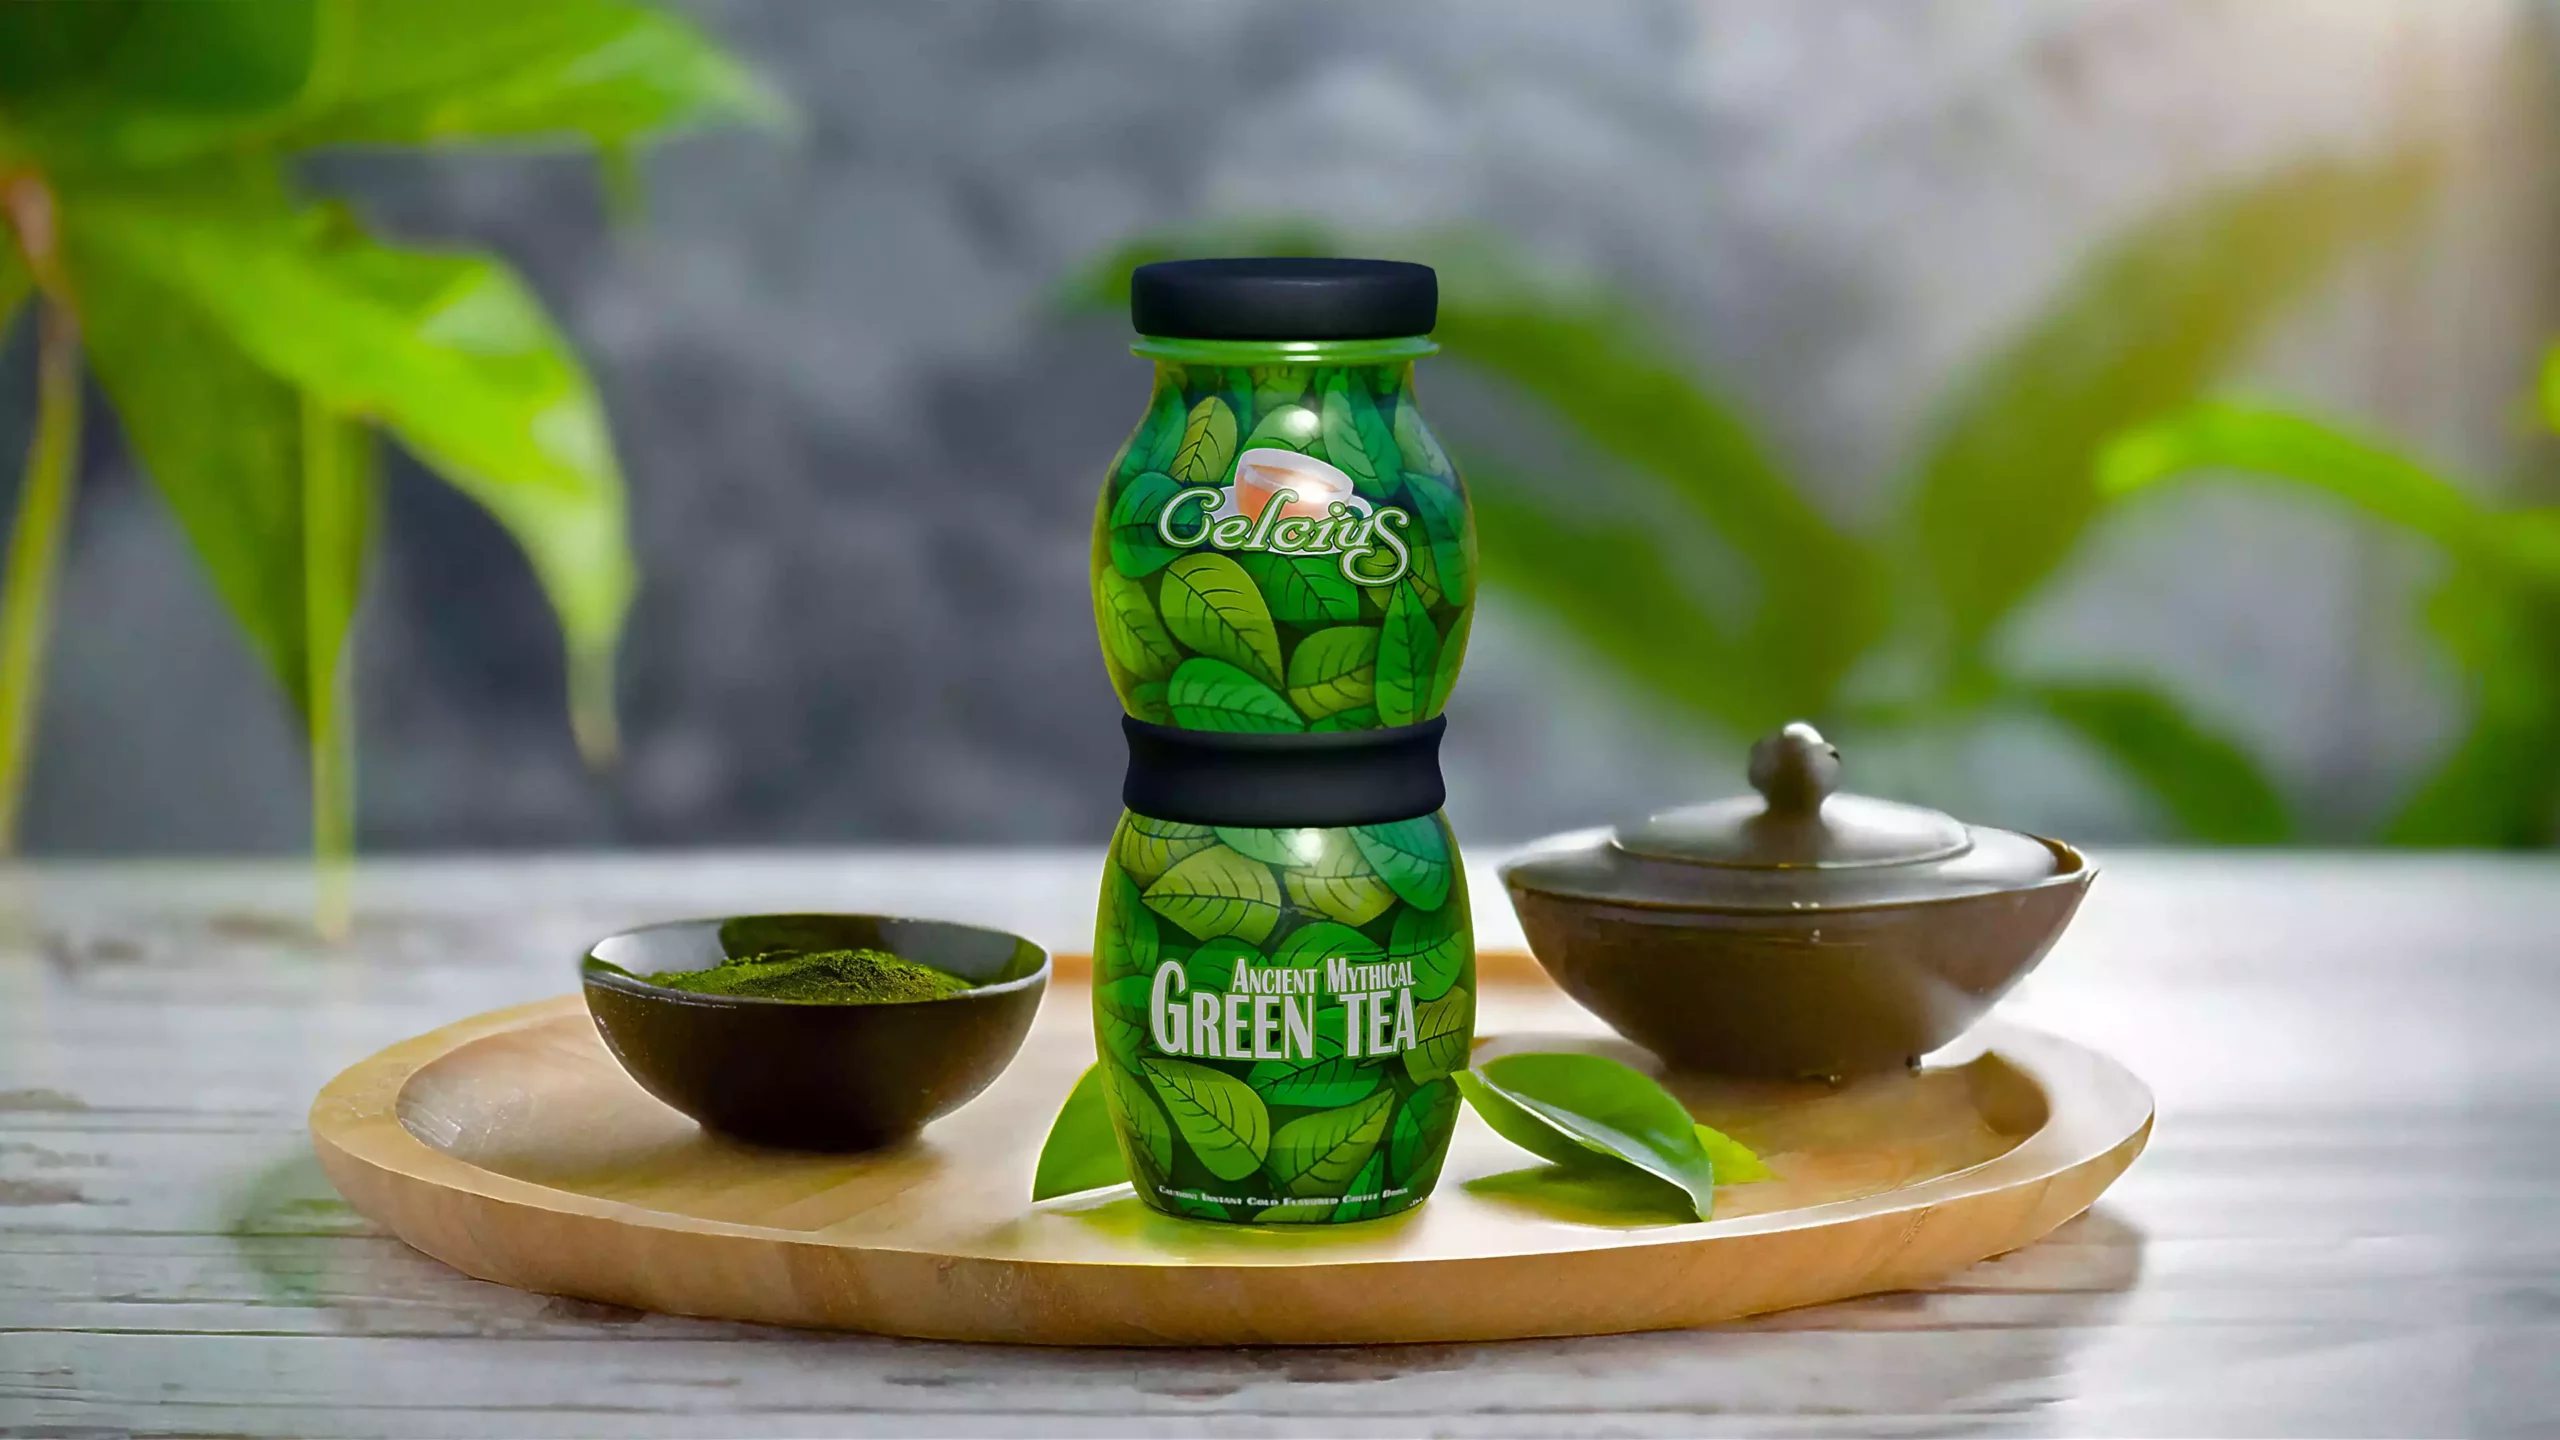 Celcius - Green Tea